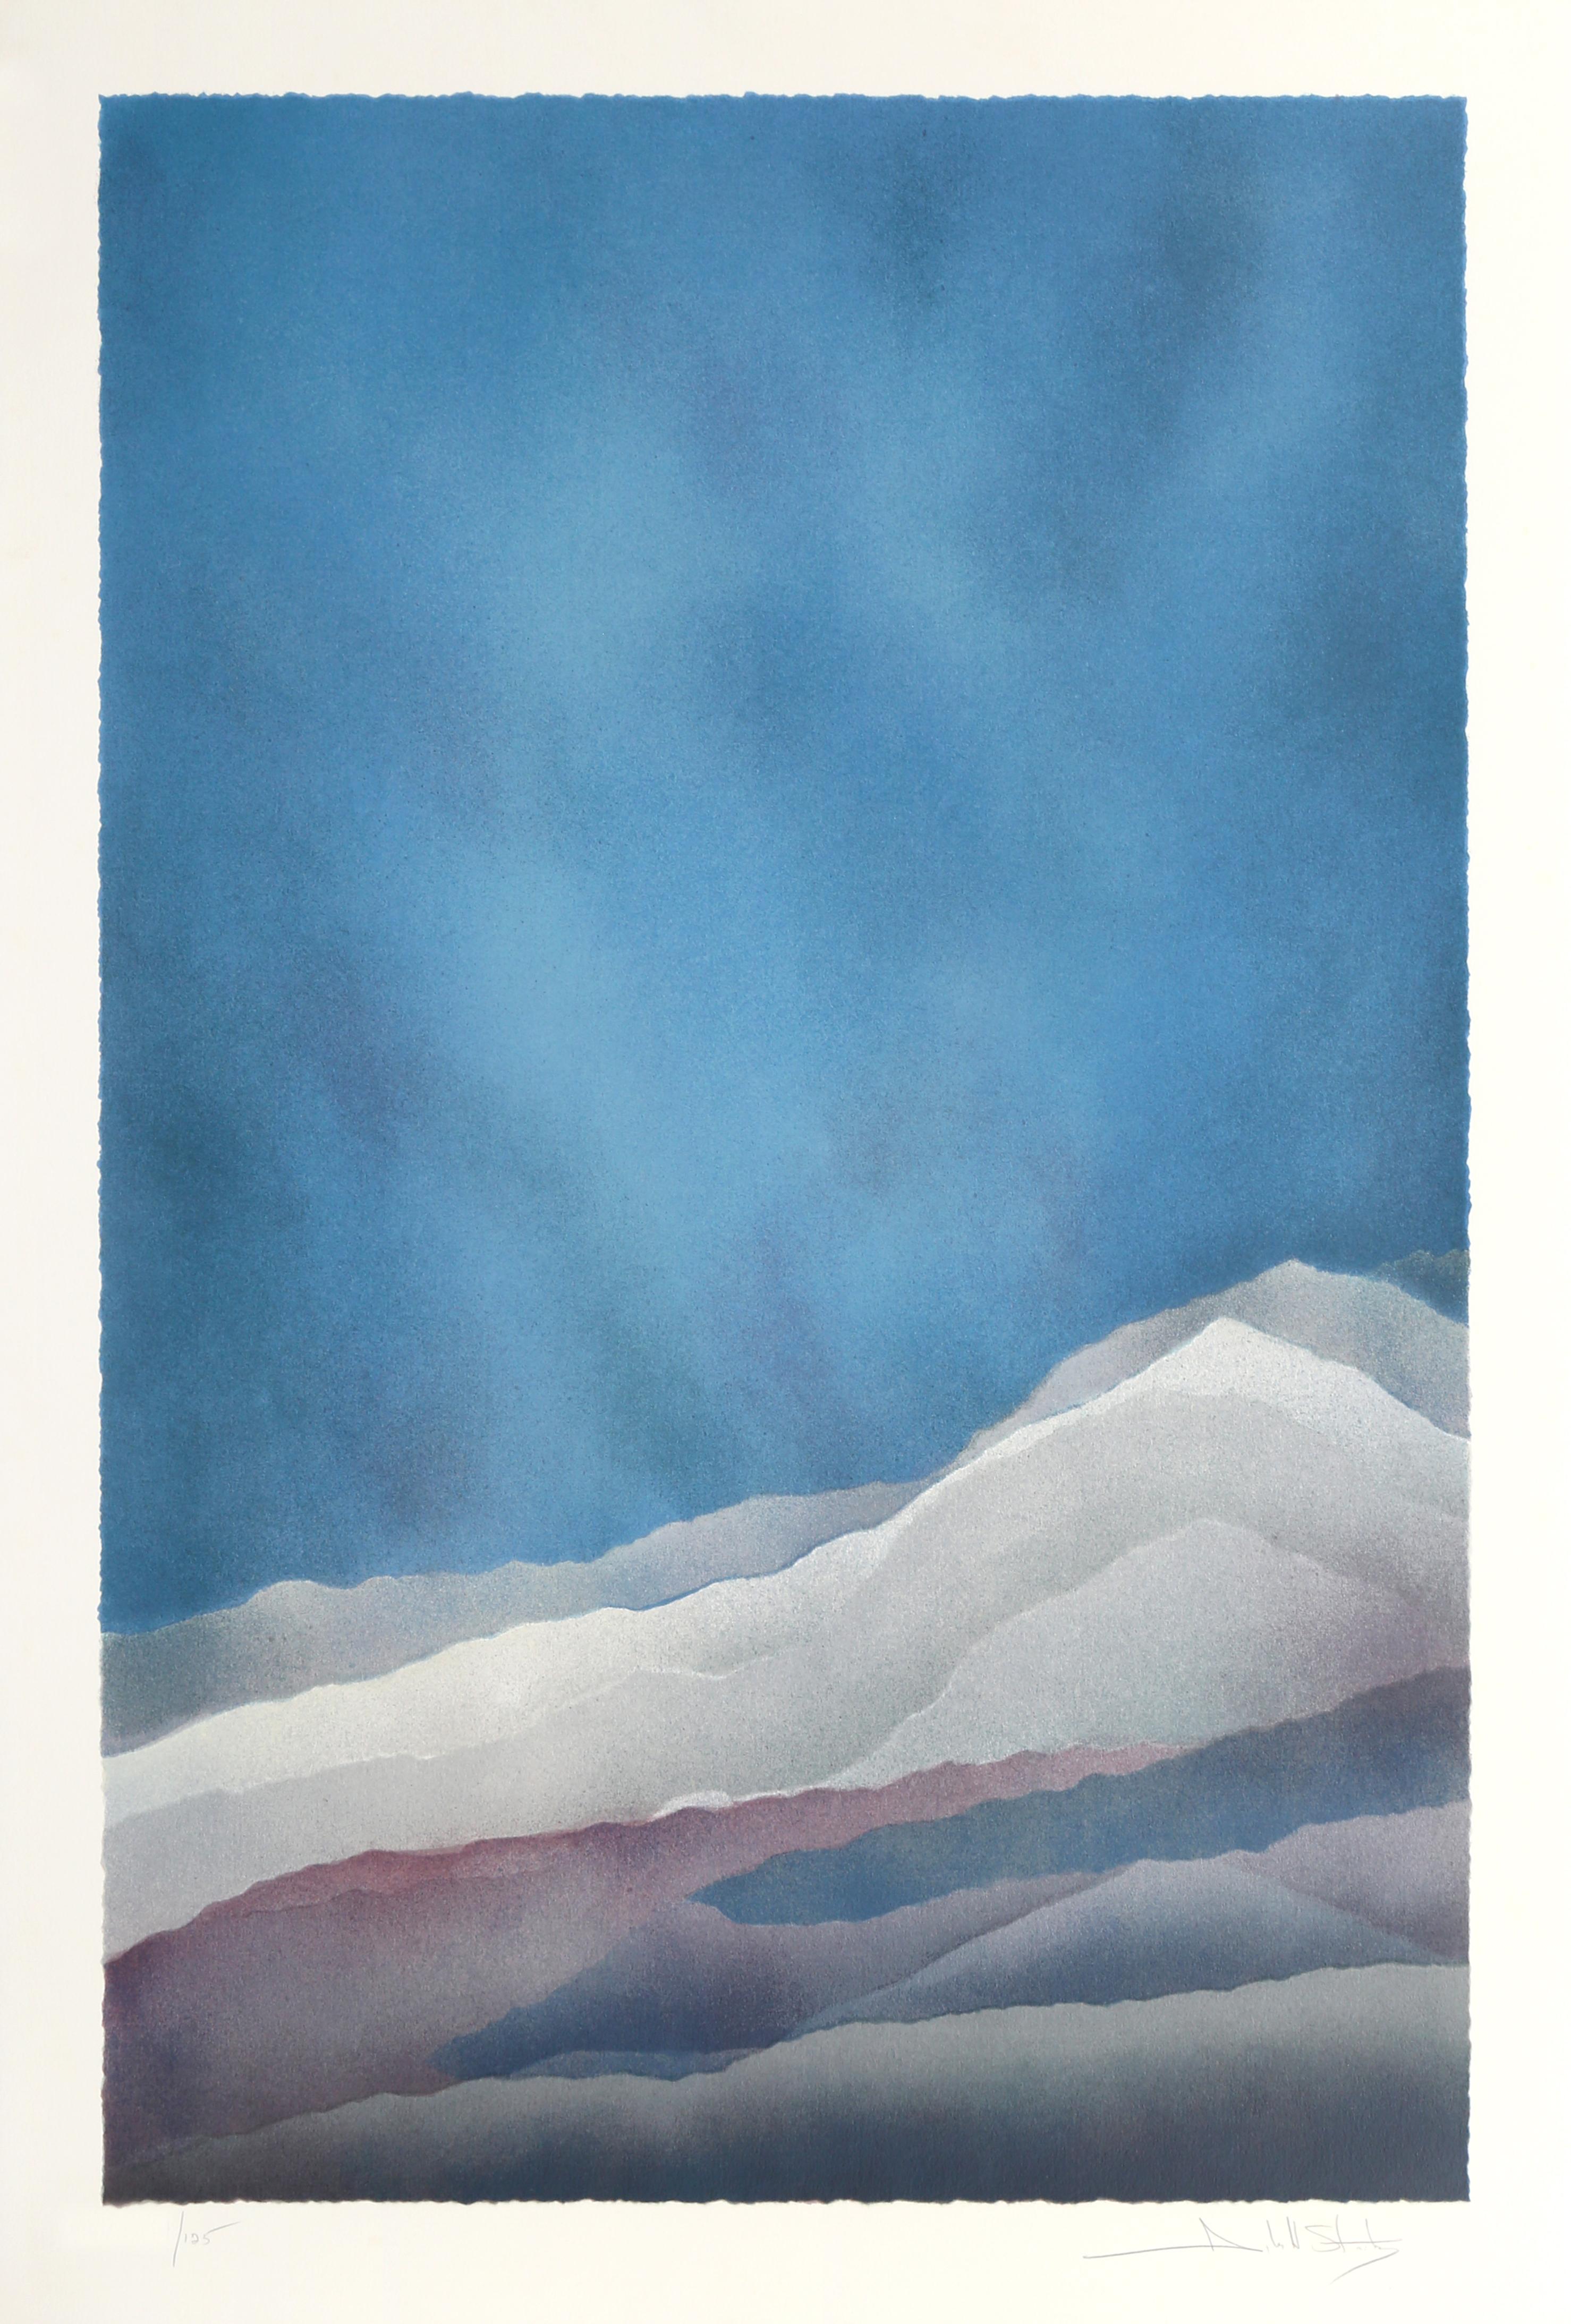 John Stritch était un artiste américain surtout connu pour ses œuvres abstraites et sculpturales. "Echoes" présente un paysage de montagne abstrait et simplifié. Cette sérigraphie est une édition de 125 exemplaires et est signée et numérotée au